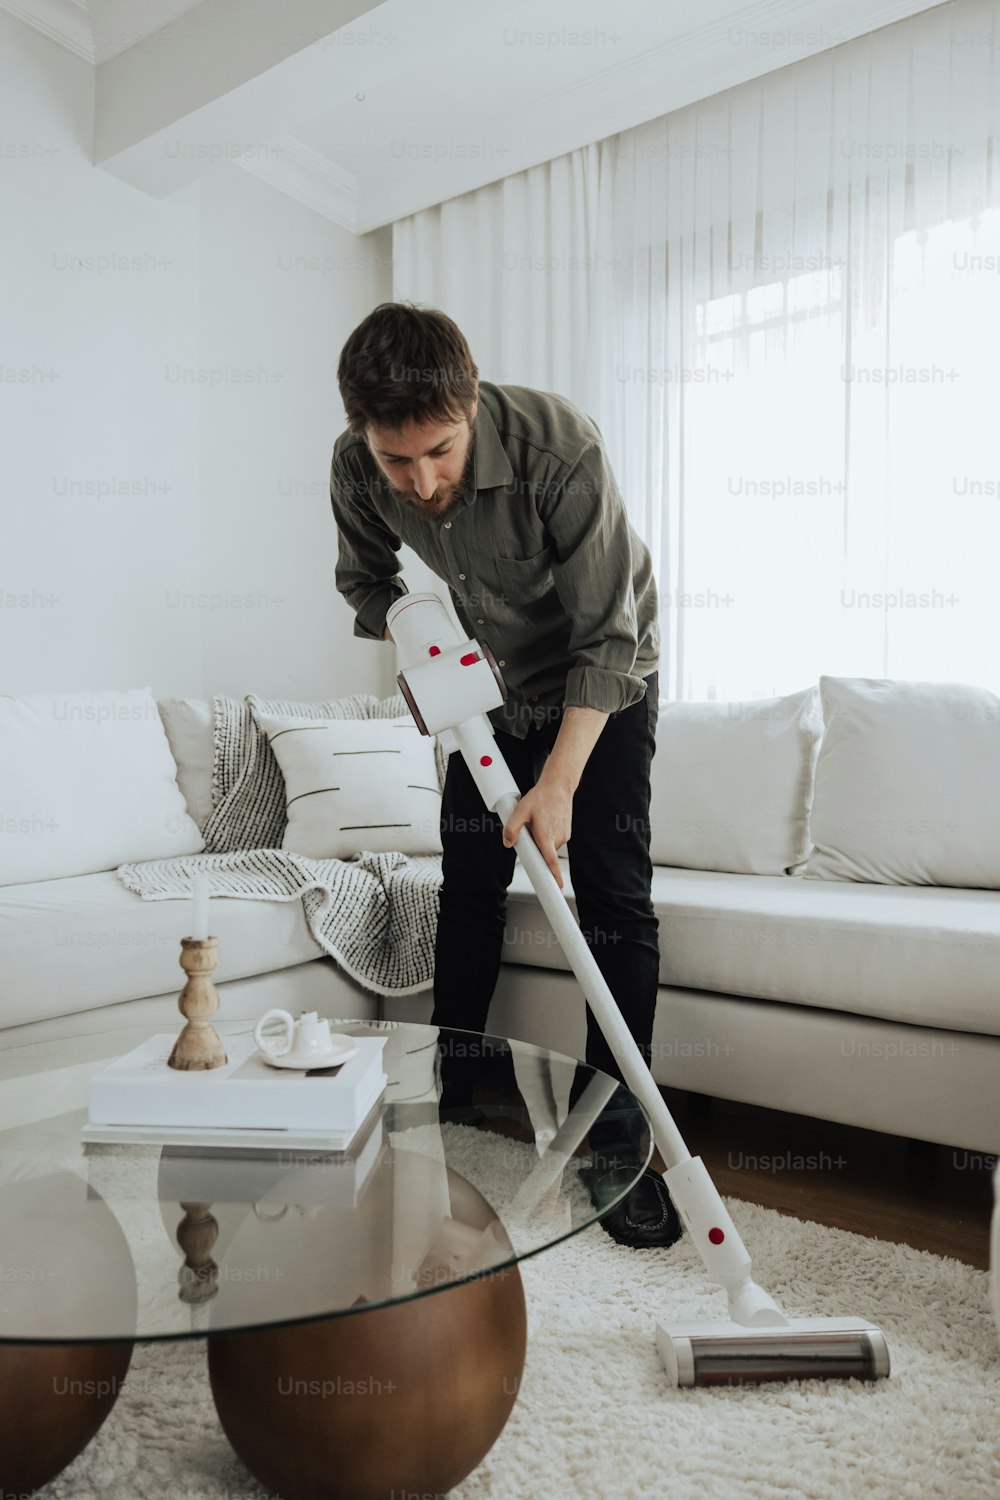 Un homme nettoie un salon avec une vadrouille